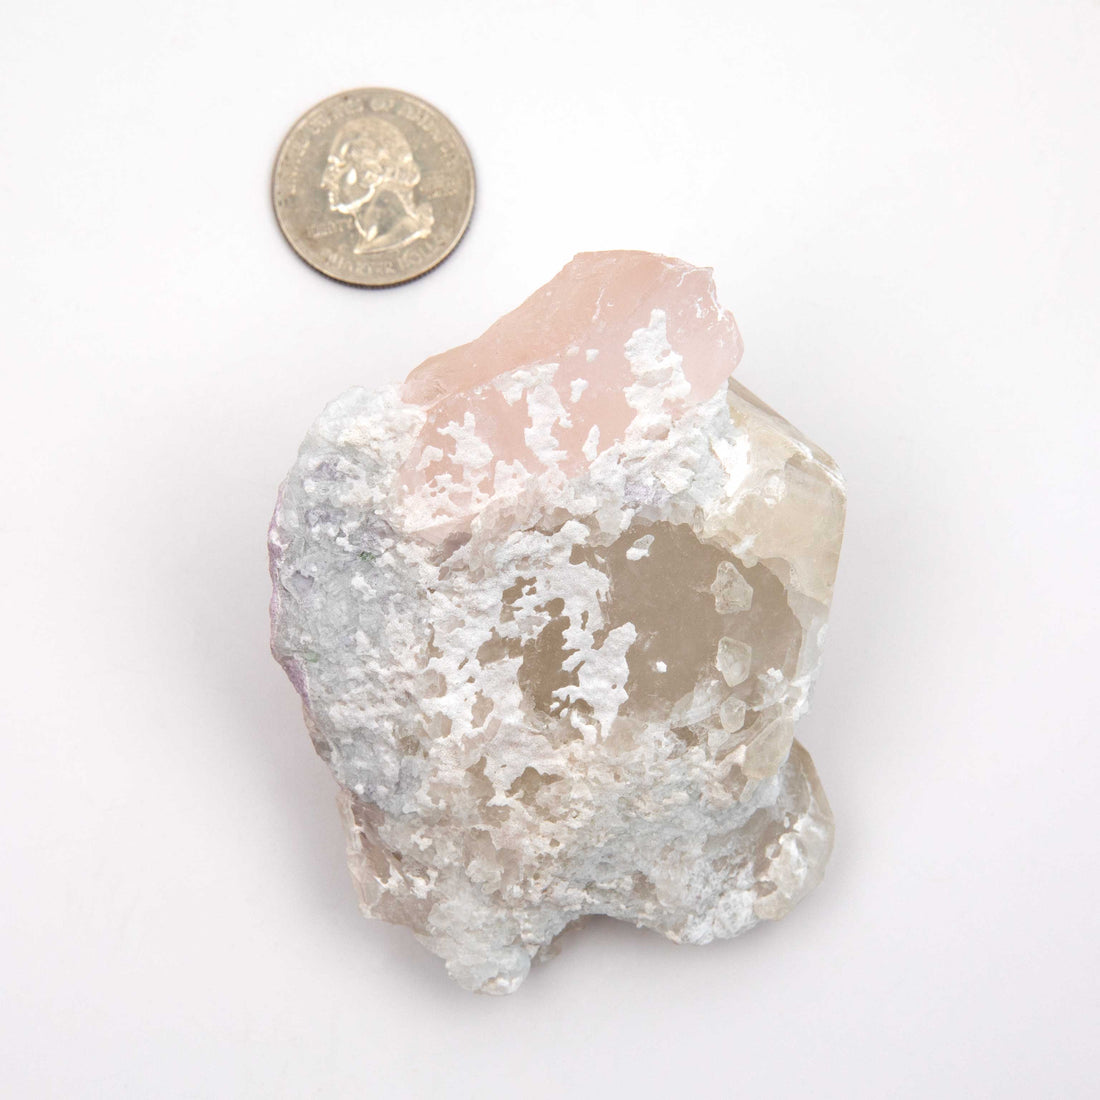 Beryl var. Morganite Terminated - on Quartz w/ Mica & Cleavelandite